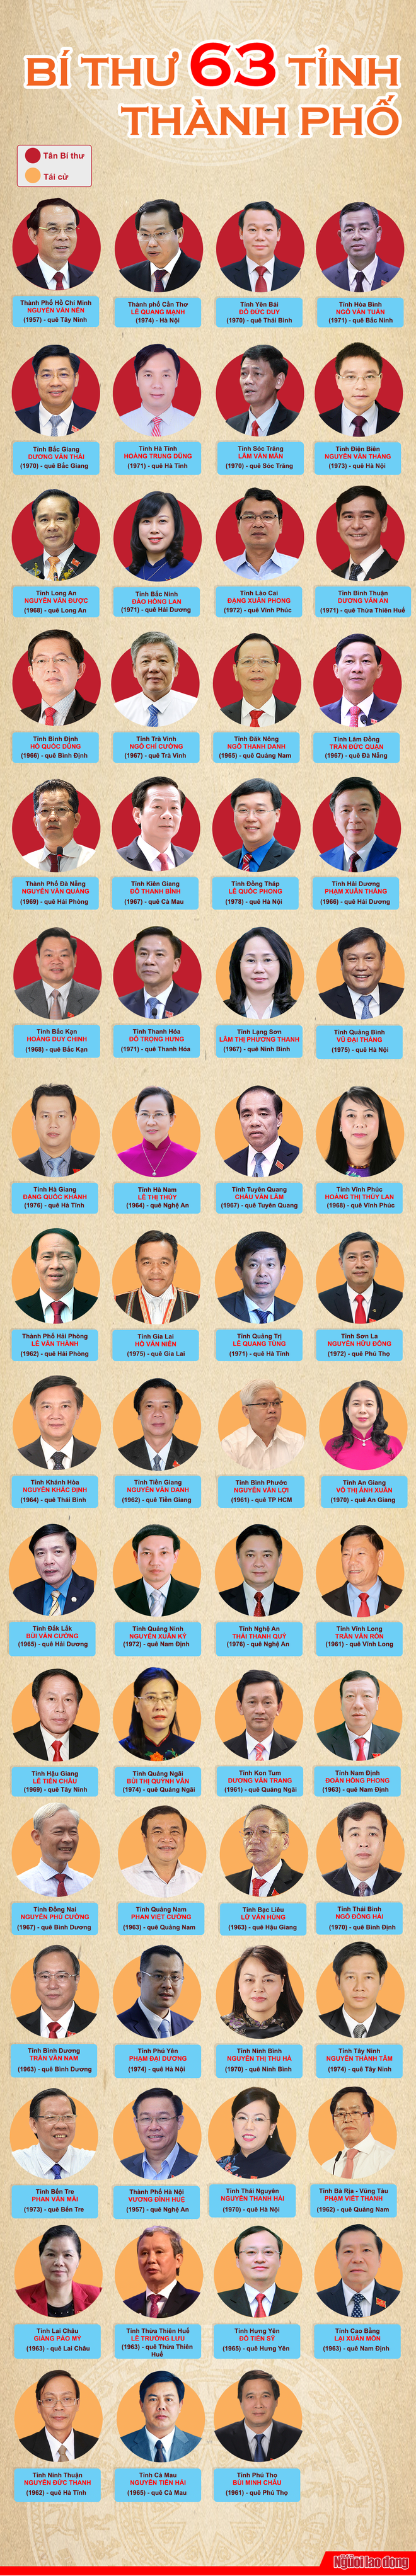 [Infographic] 63 bí thư Tỉnh ủy, Thành ủy nhiệm kỳ 2020-2025 - Ảnh 1.